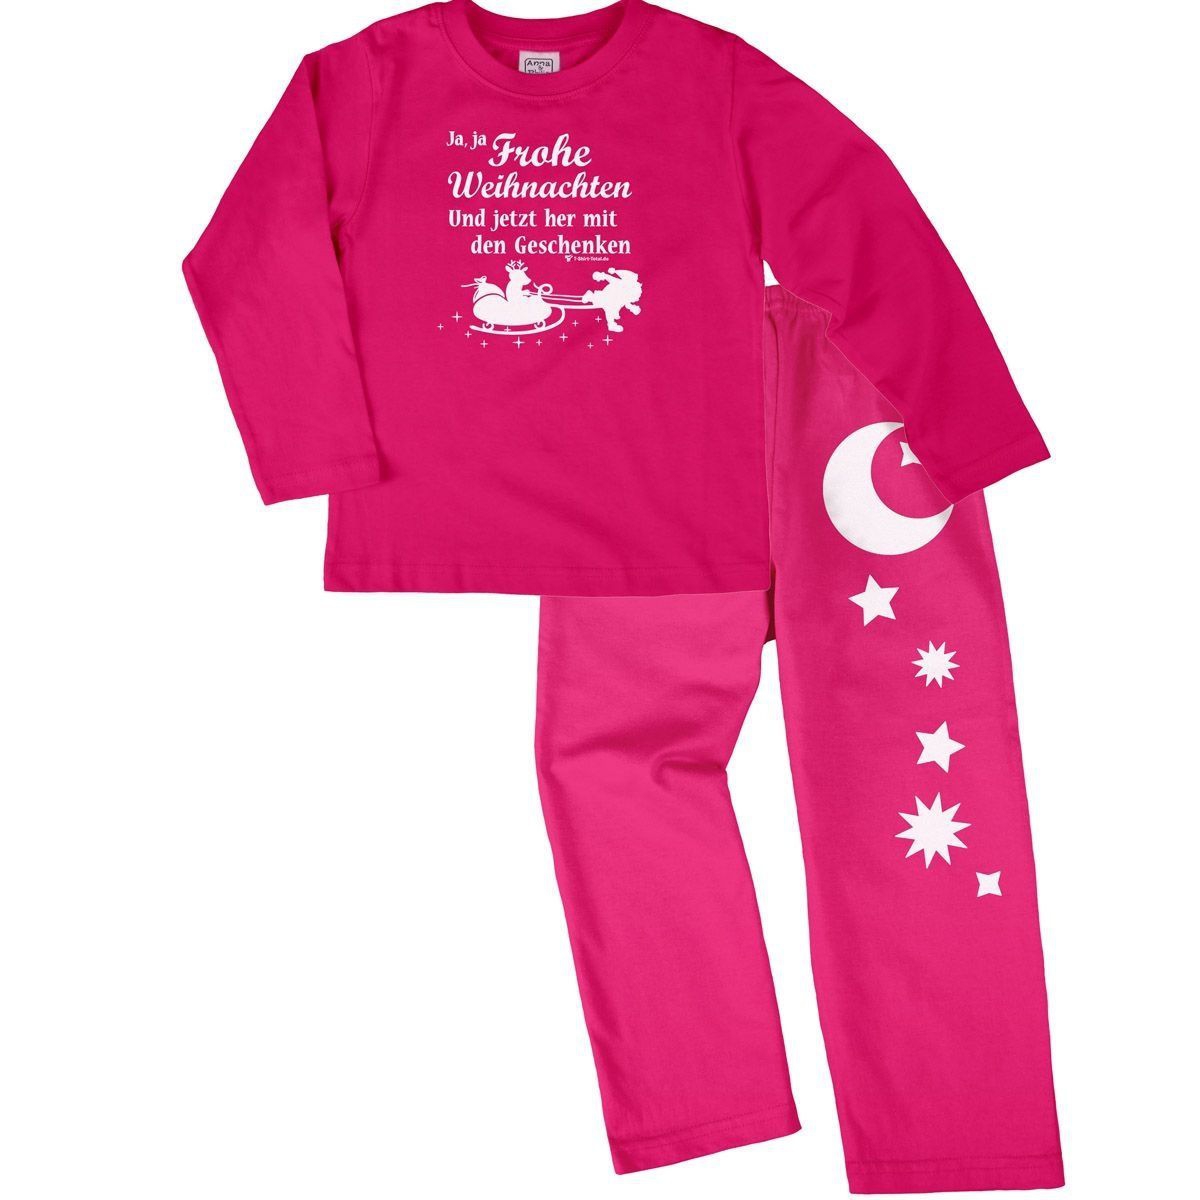 Ja ja Frohe Weihnachten Pyjama Set pink / pink 92